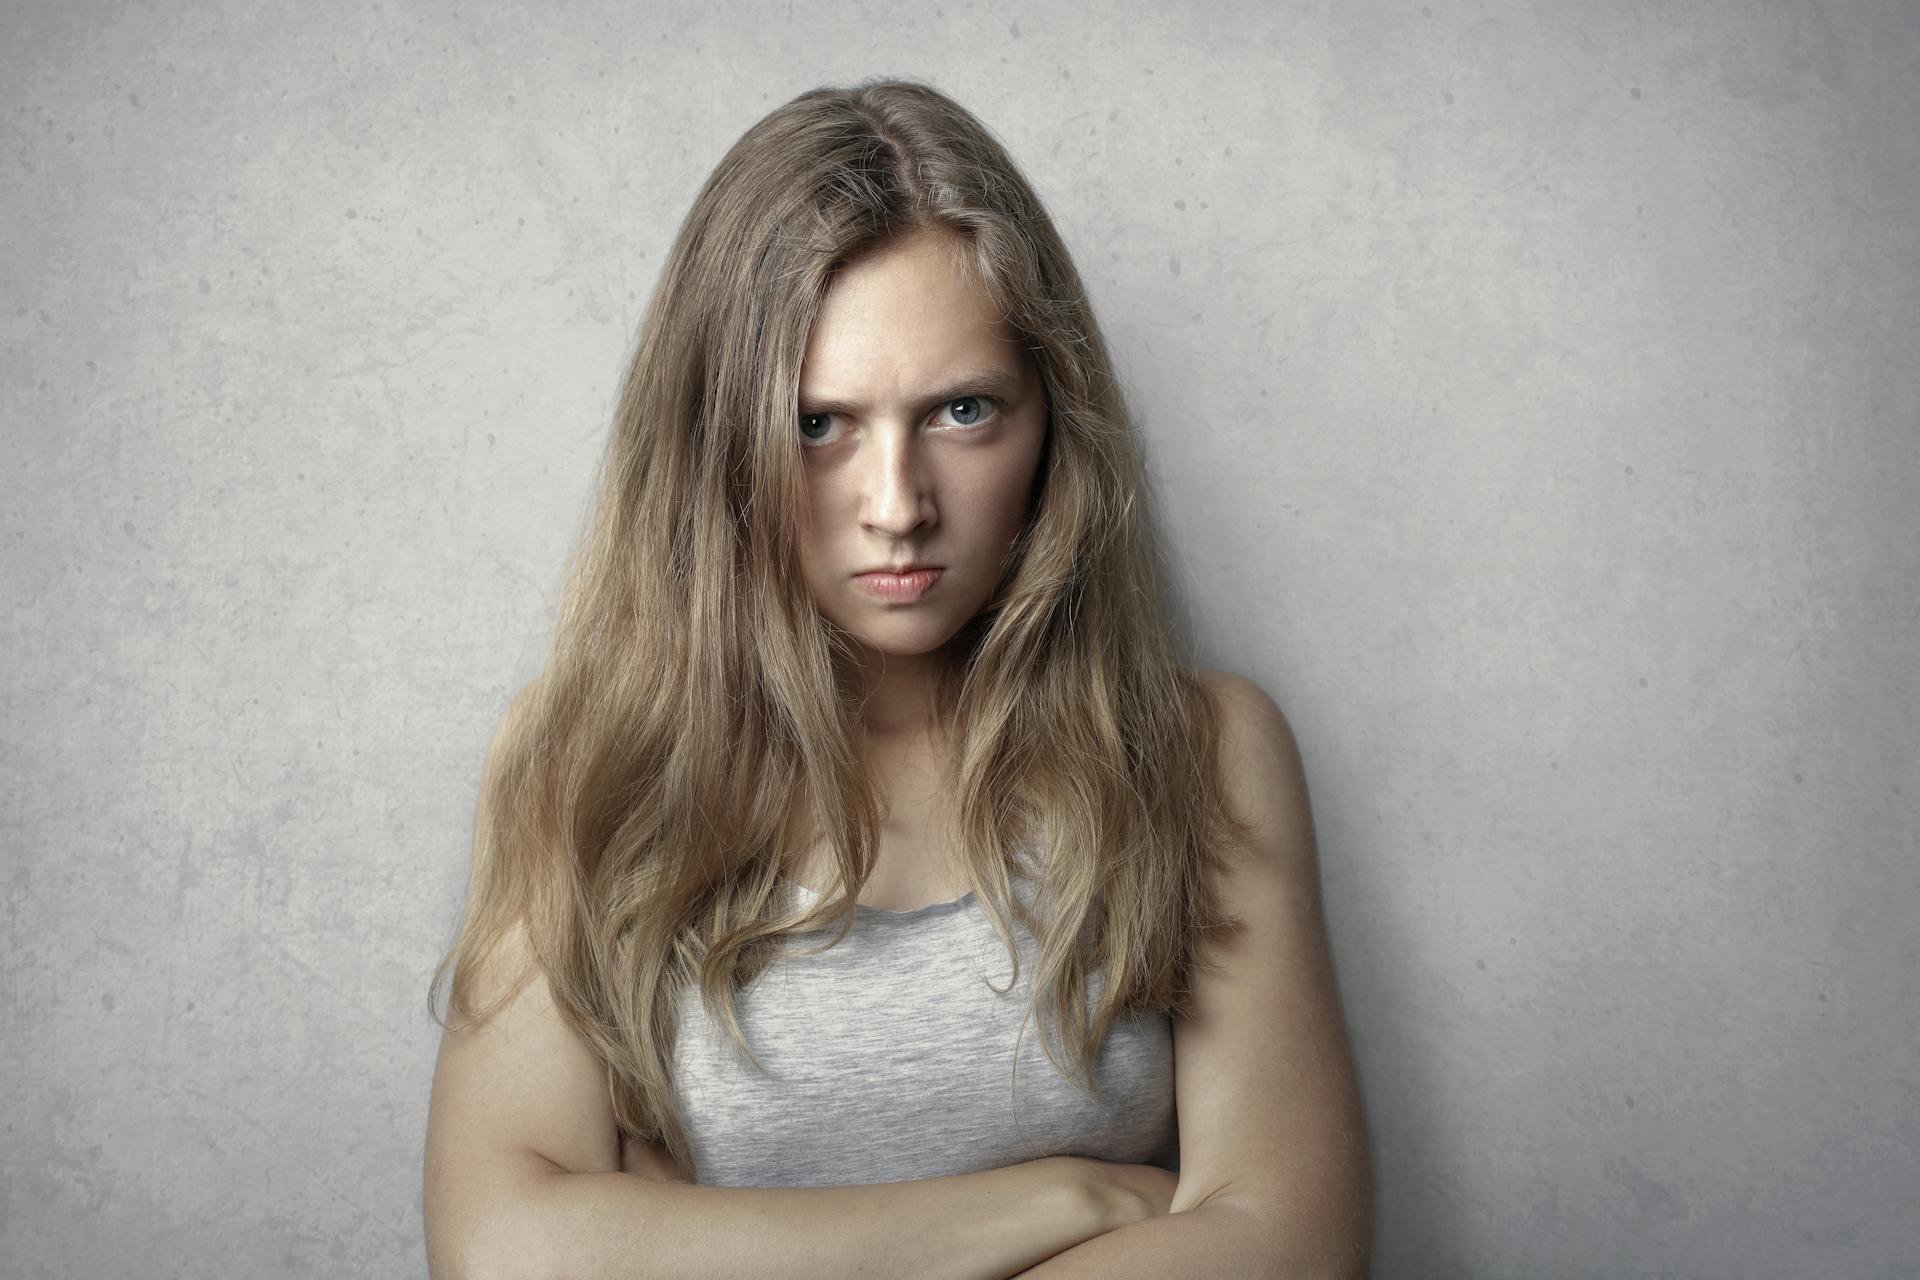 Une jeune femme en colère debout, les bras croisés | Source : Pexels